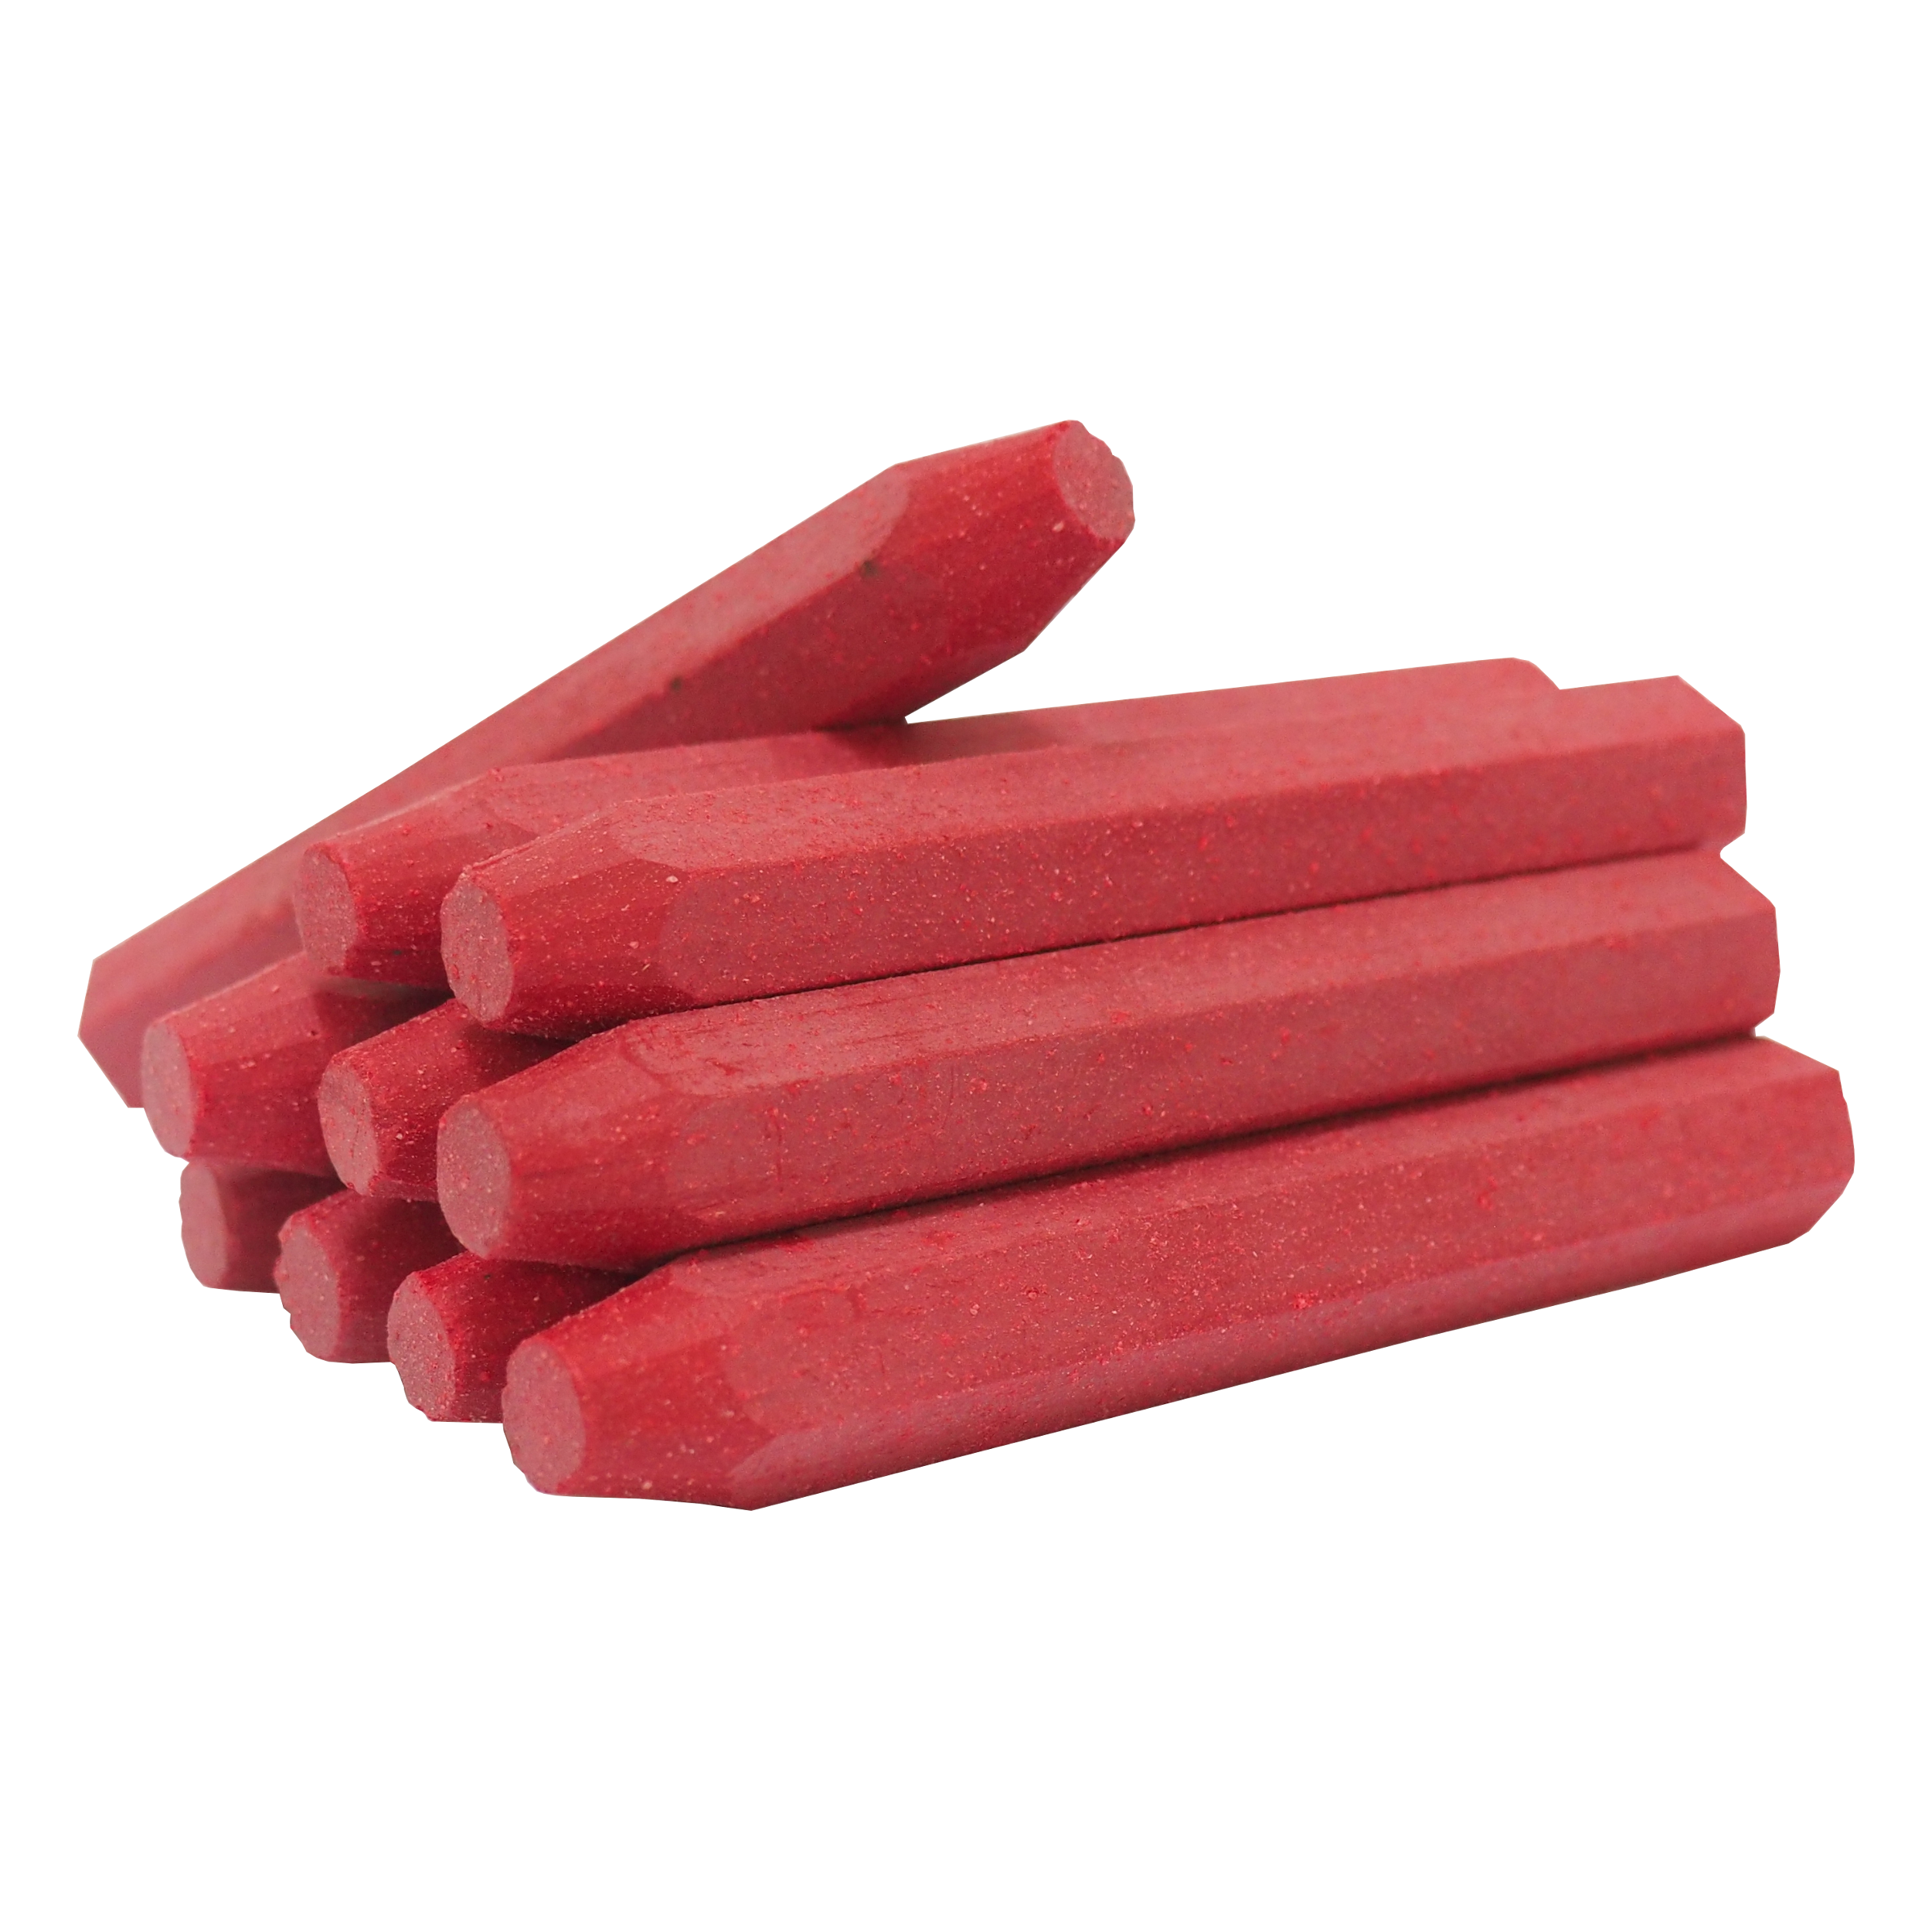 TOPTRADE tužka značkovač, červená,  sada 12 ks, 13 x 100 mm 0.27 Kg TOP Sklad4 600205 414